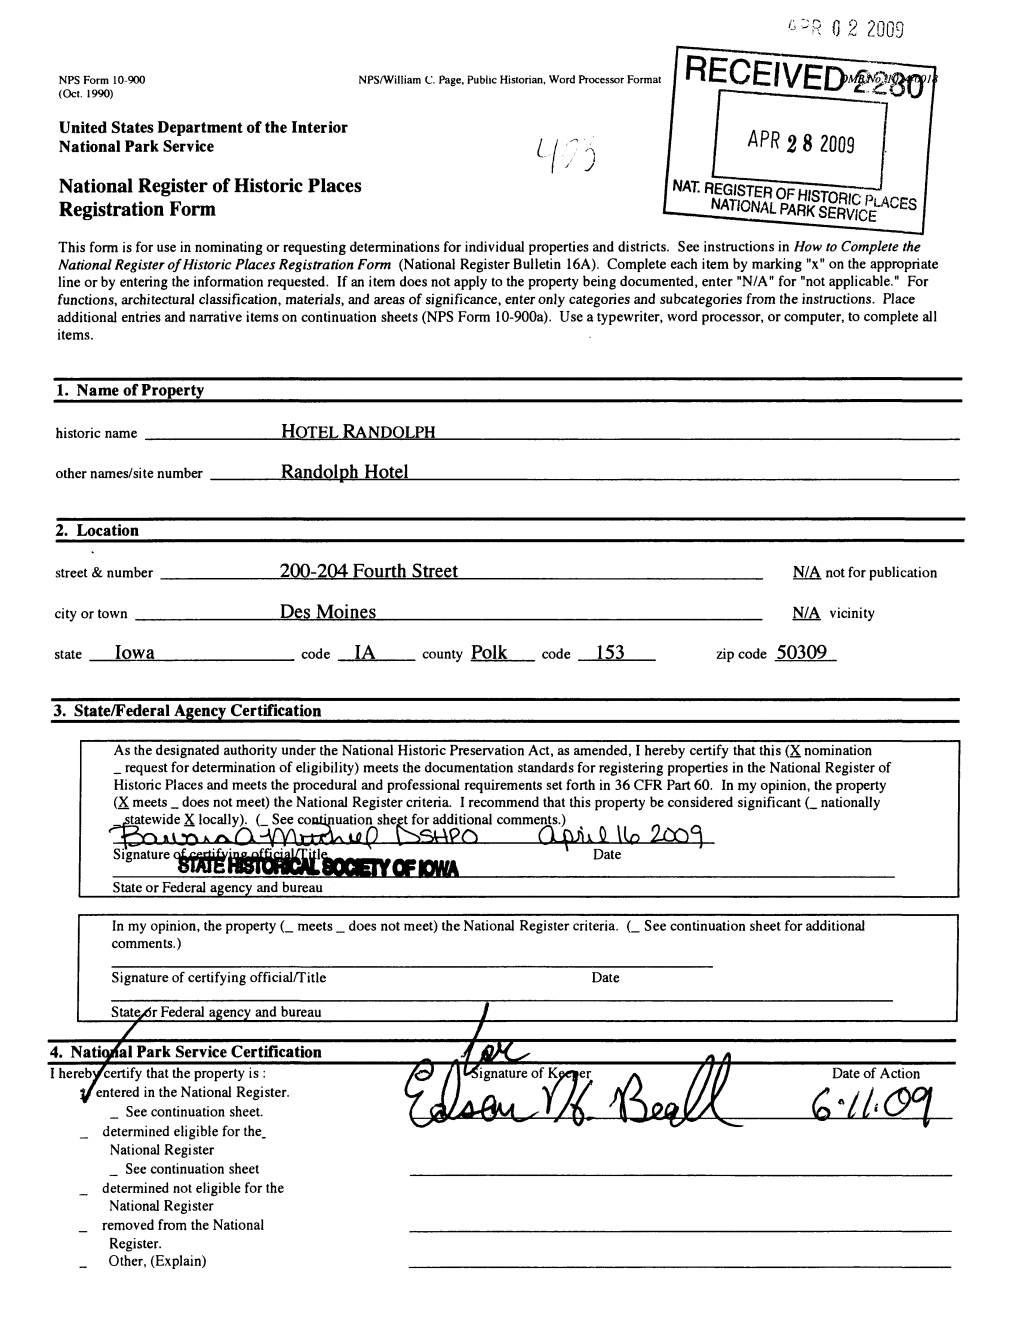 PR 2 8 2009 National Register of Historic Places Registration Form